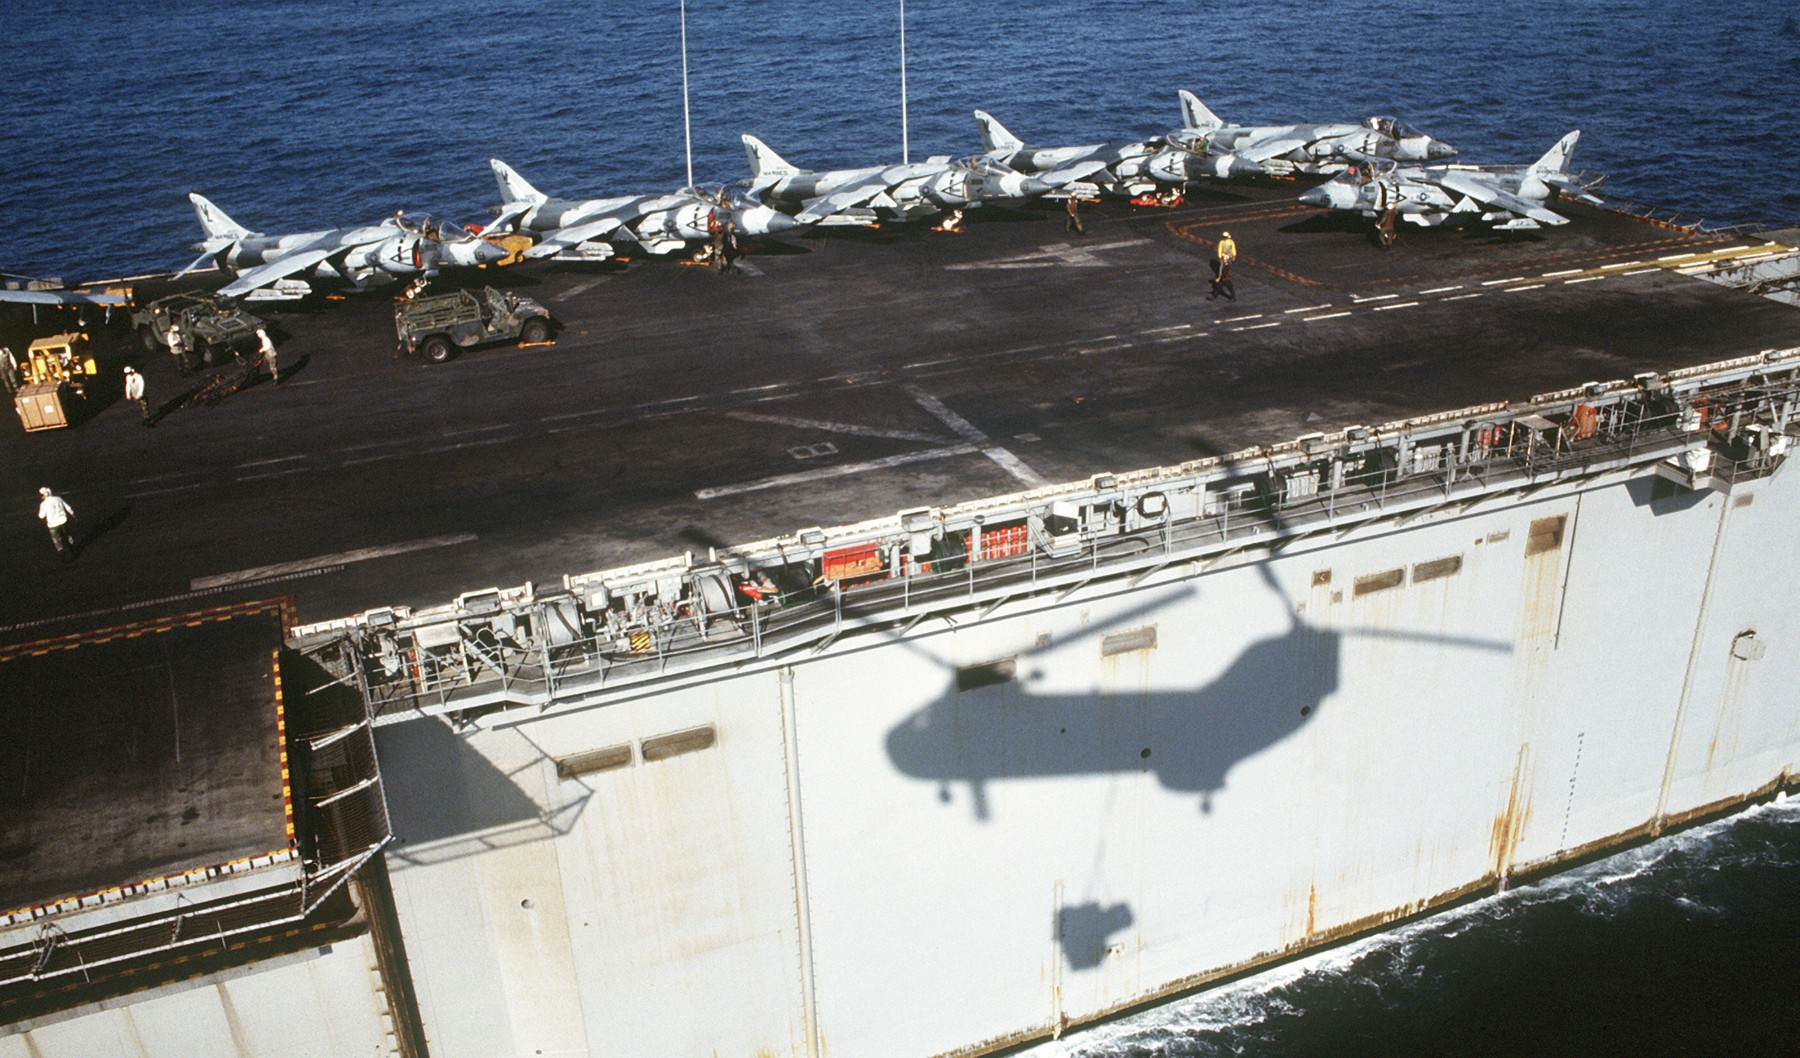 lha-4 uss nassau tarawa class amphibious assault ship us navy 135 desert storm harrier camouflage